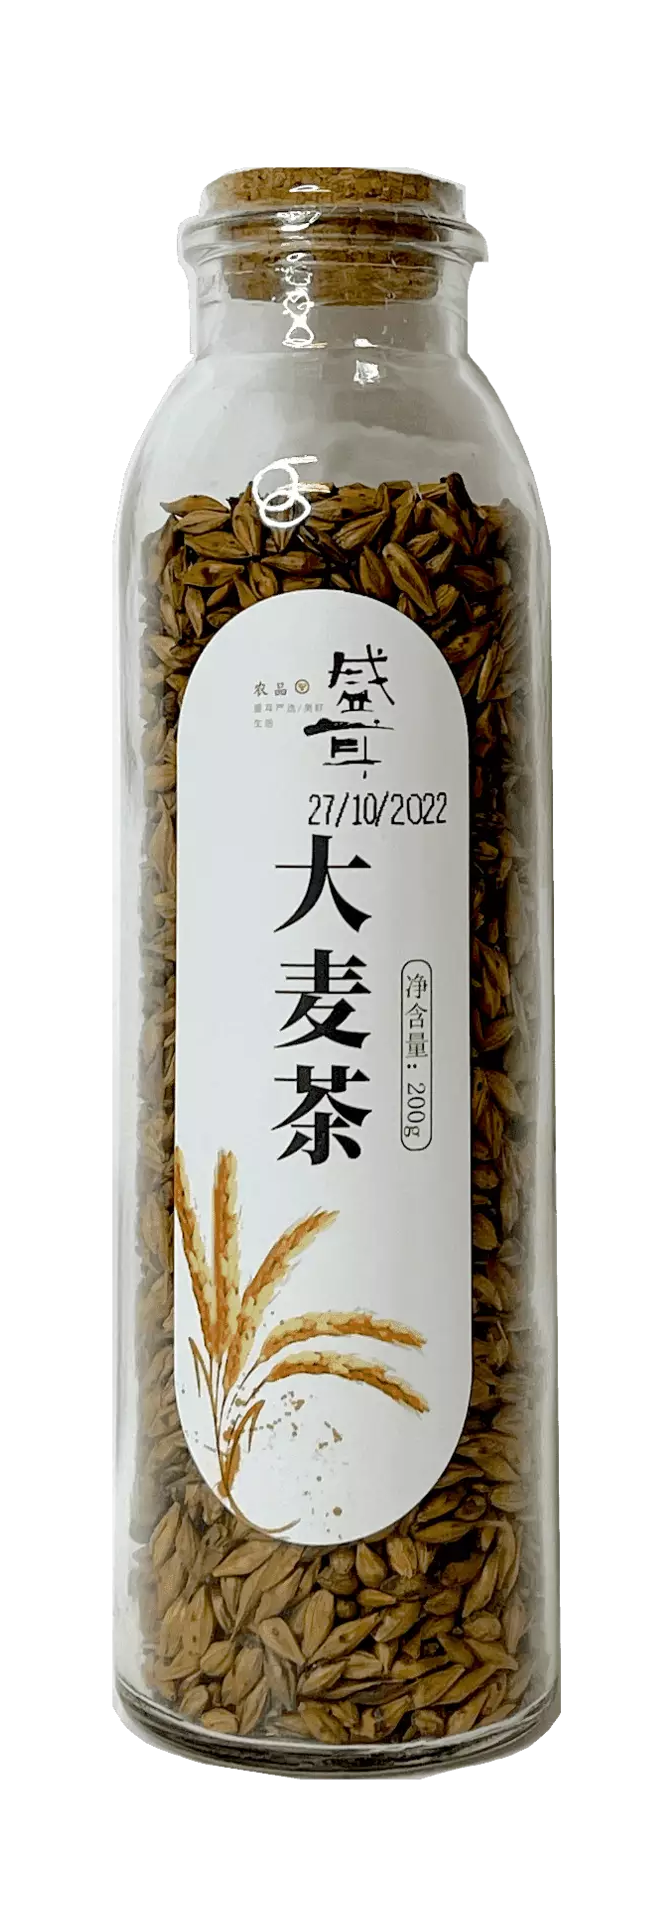 Barley tea 200g Sheng Is China